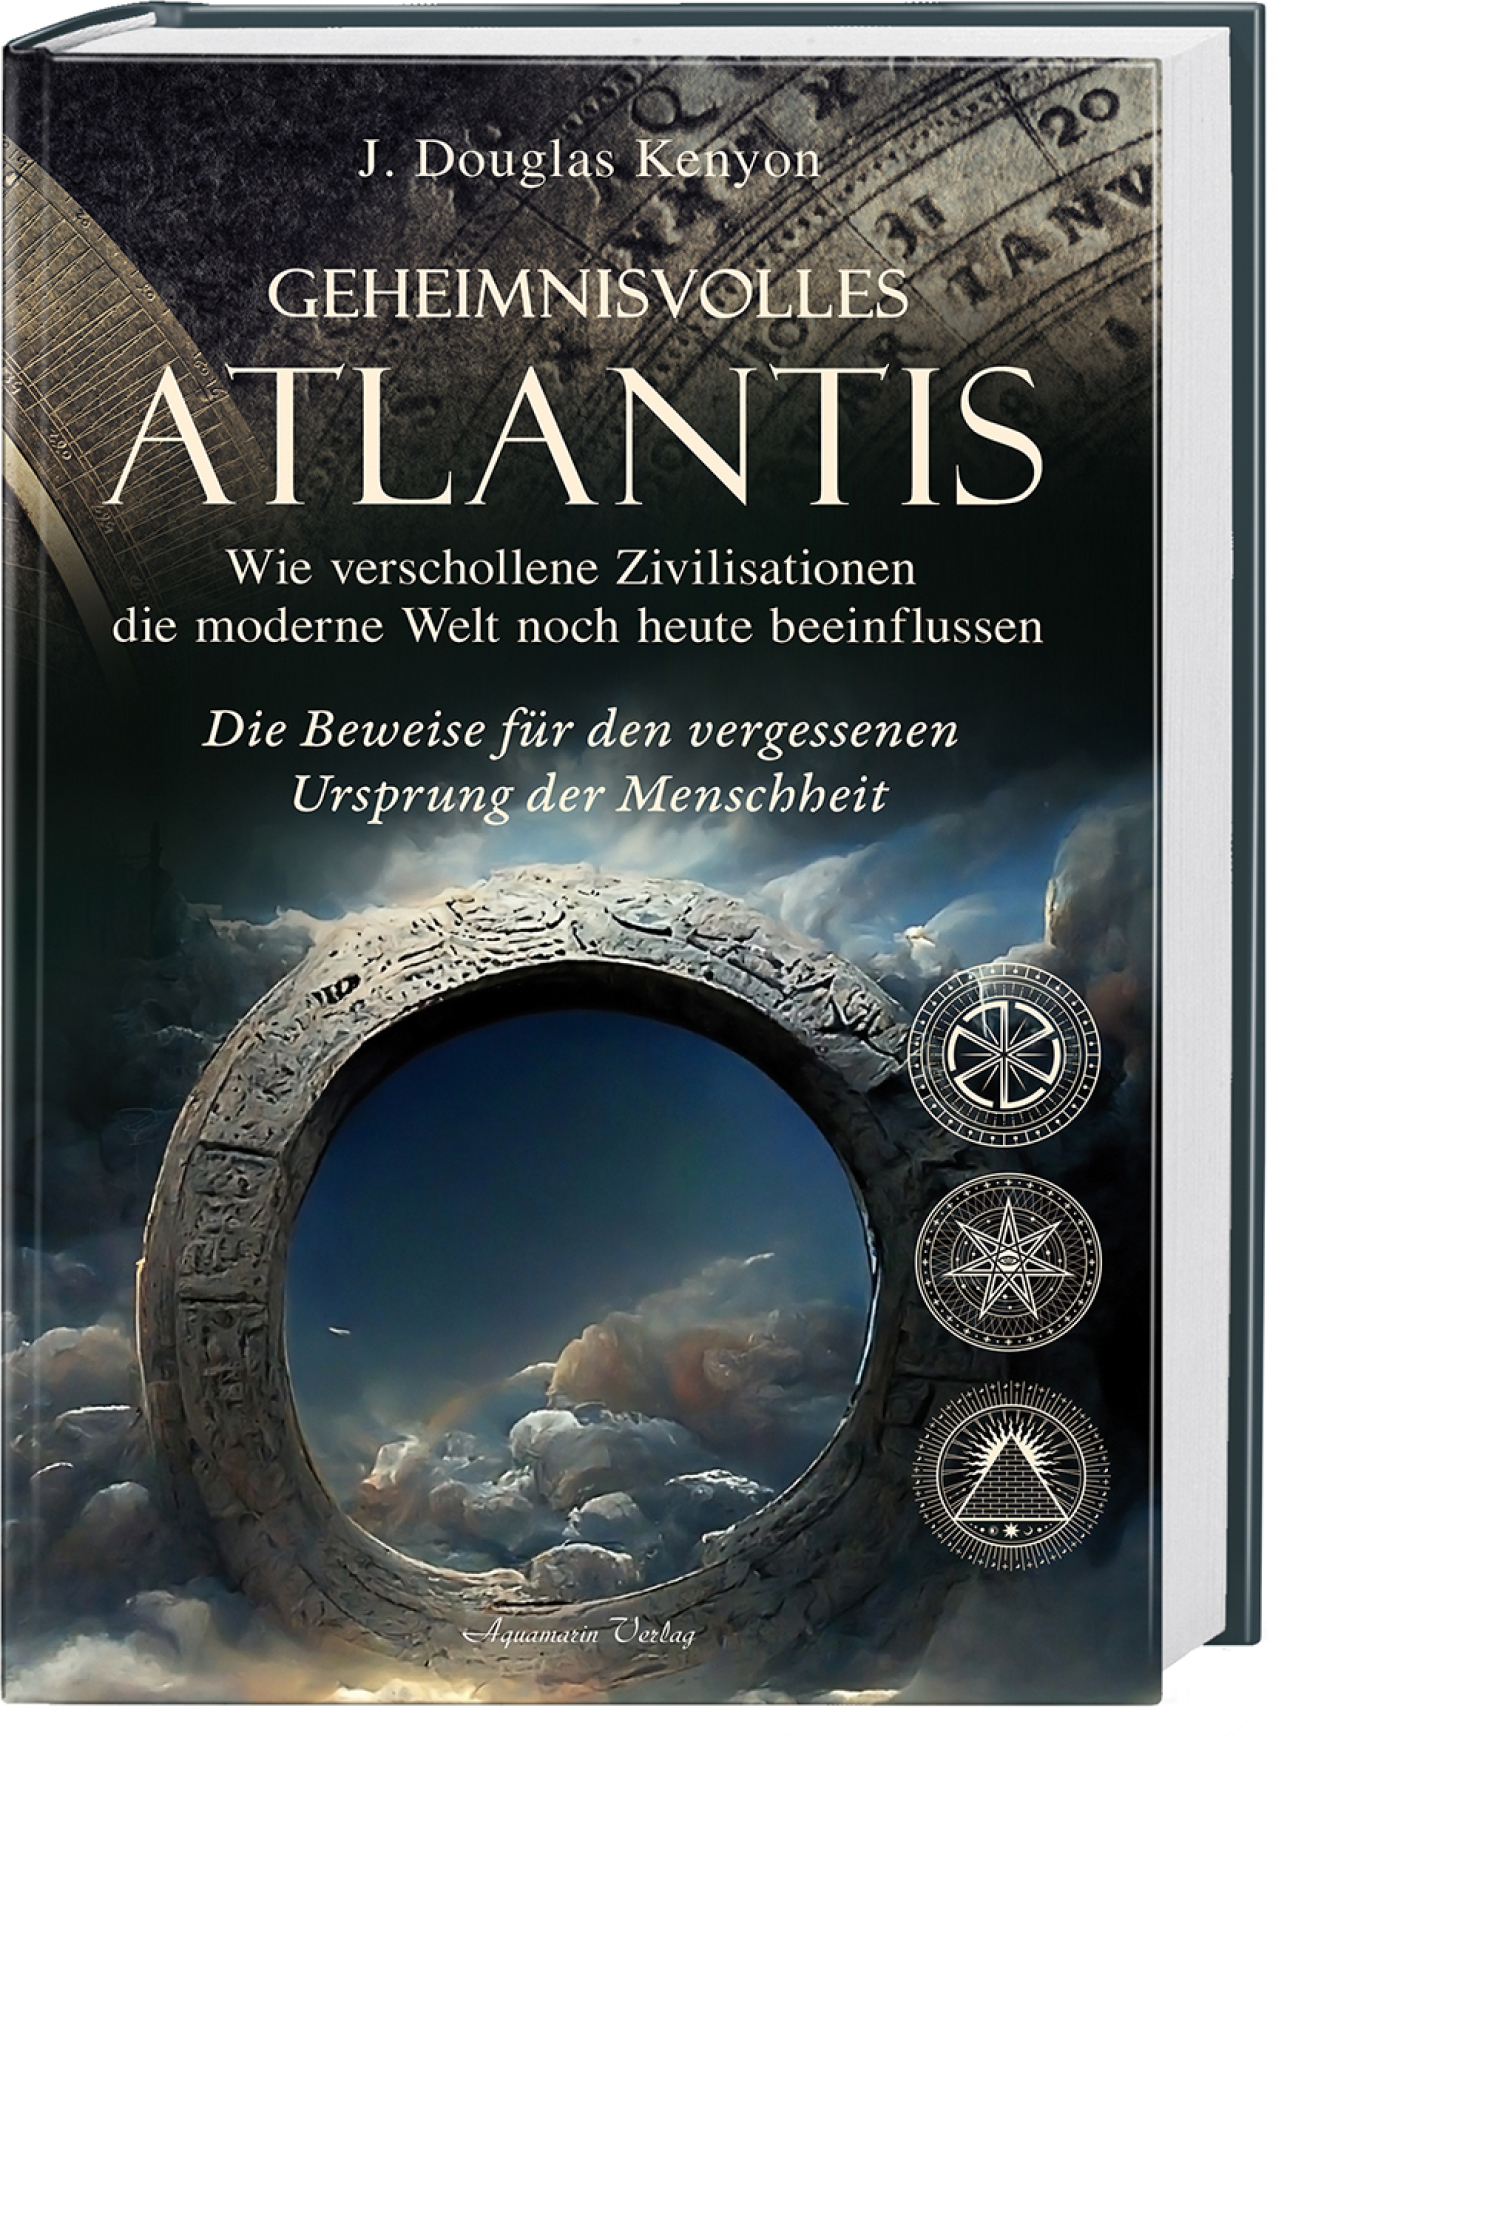 Geheimnisvolles Atlantis – Wie verschollene Zivilisationen die moderne Welt noch heute beeinflussen, Produktbild 1